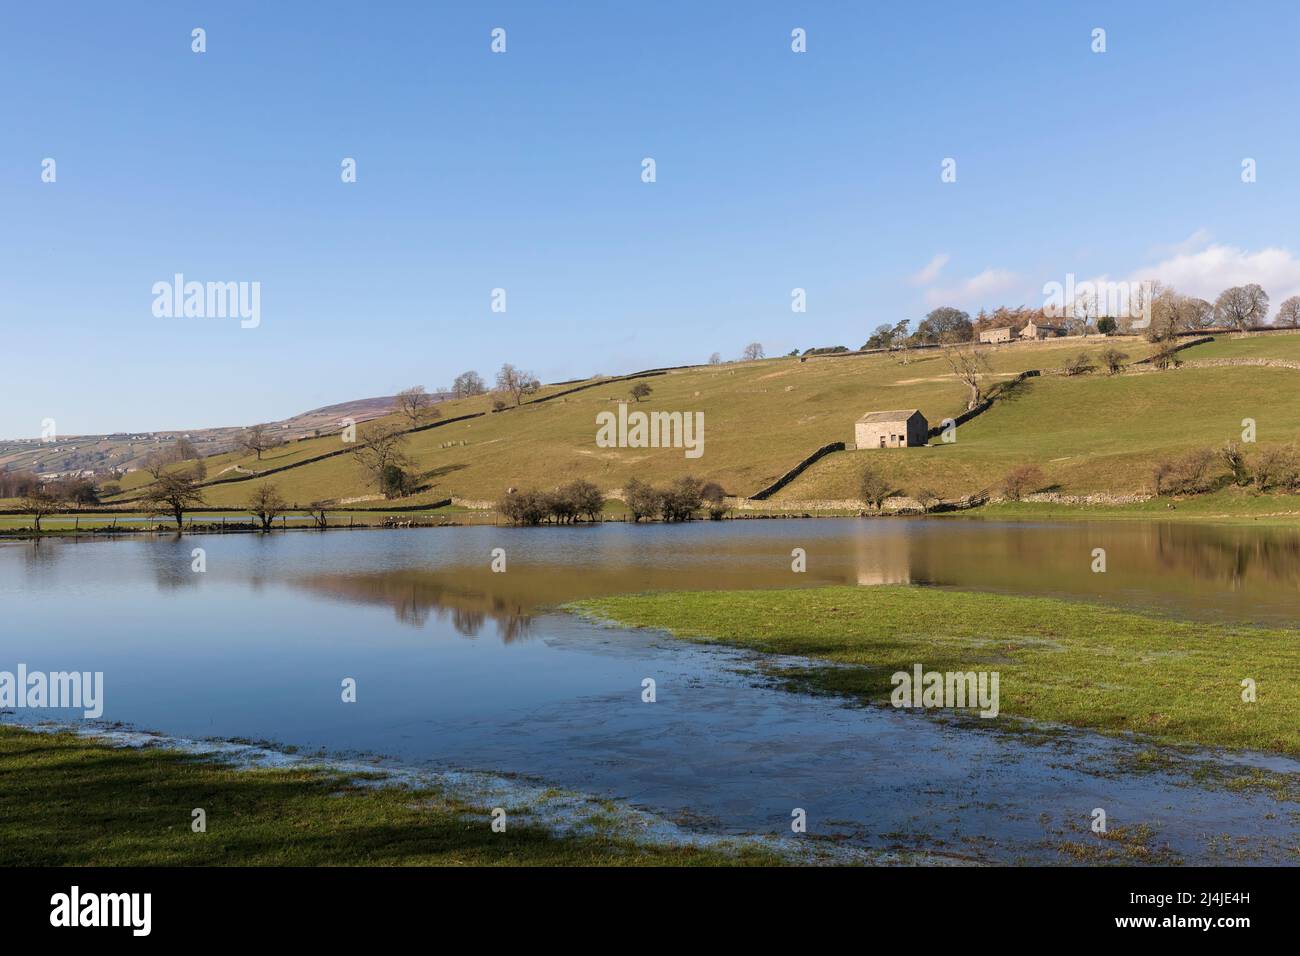 Champs inondés près de Reeth à Swaledale, dans le parc national de Yorkshire Dales. La grange emblématique en pierre et les murs en pierre sèche se reflètent dans l'eau fixe. Banque D'Images